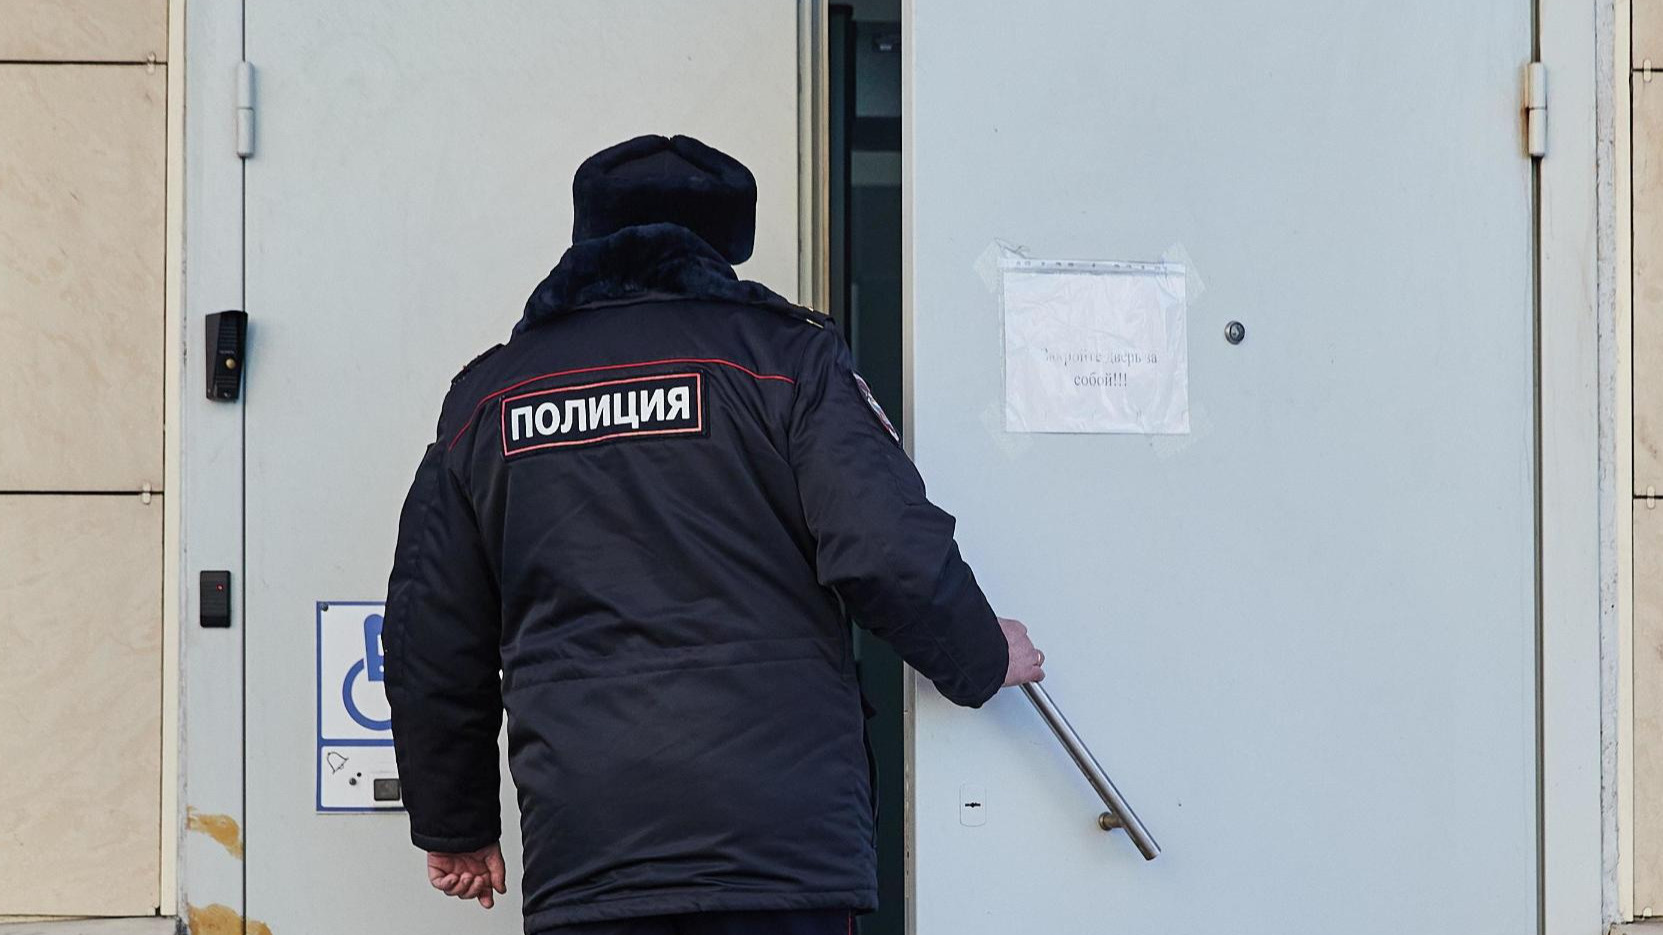 «Решил наказать»: полицейский избил беззащитного человека в одном из отделений Архангельска